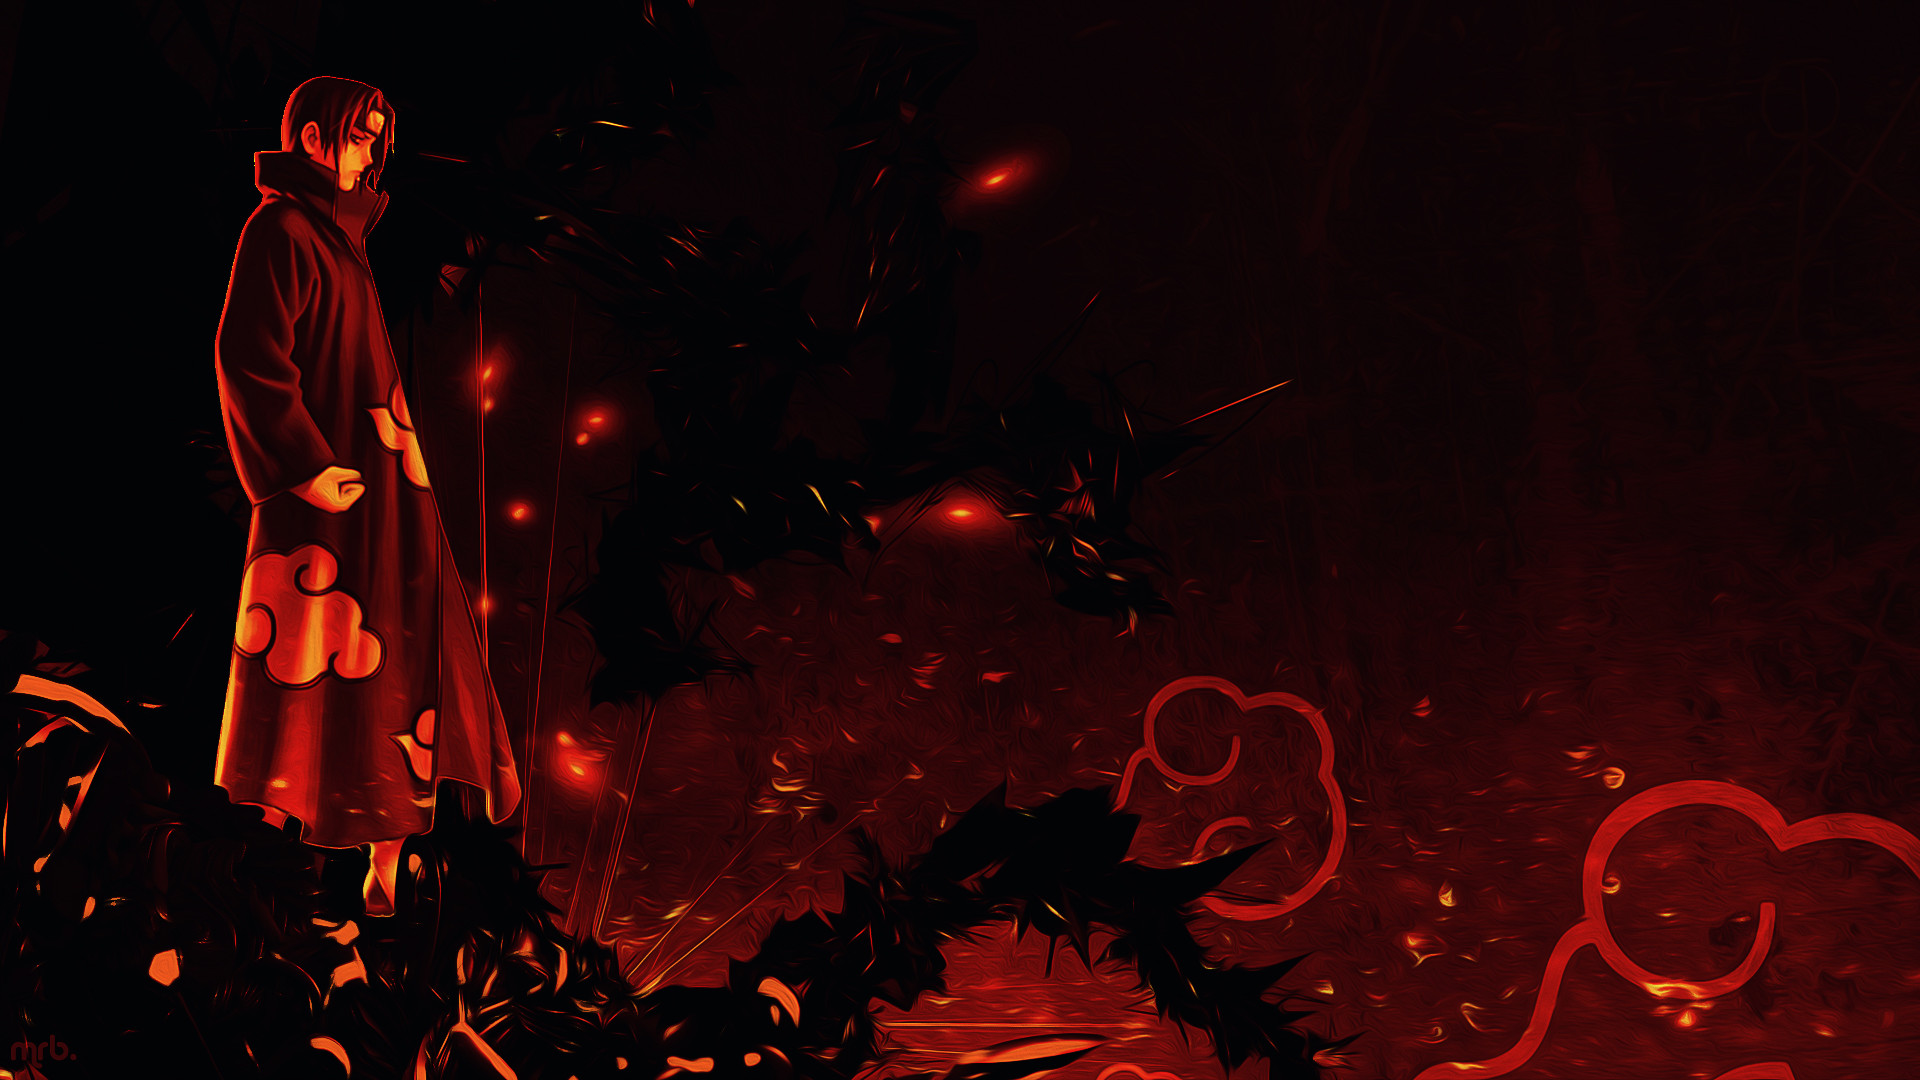 akatsuki fondo de pantalla 1920x1080,rojo,oscuridad,ilustración,calor,cg artwork